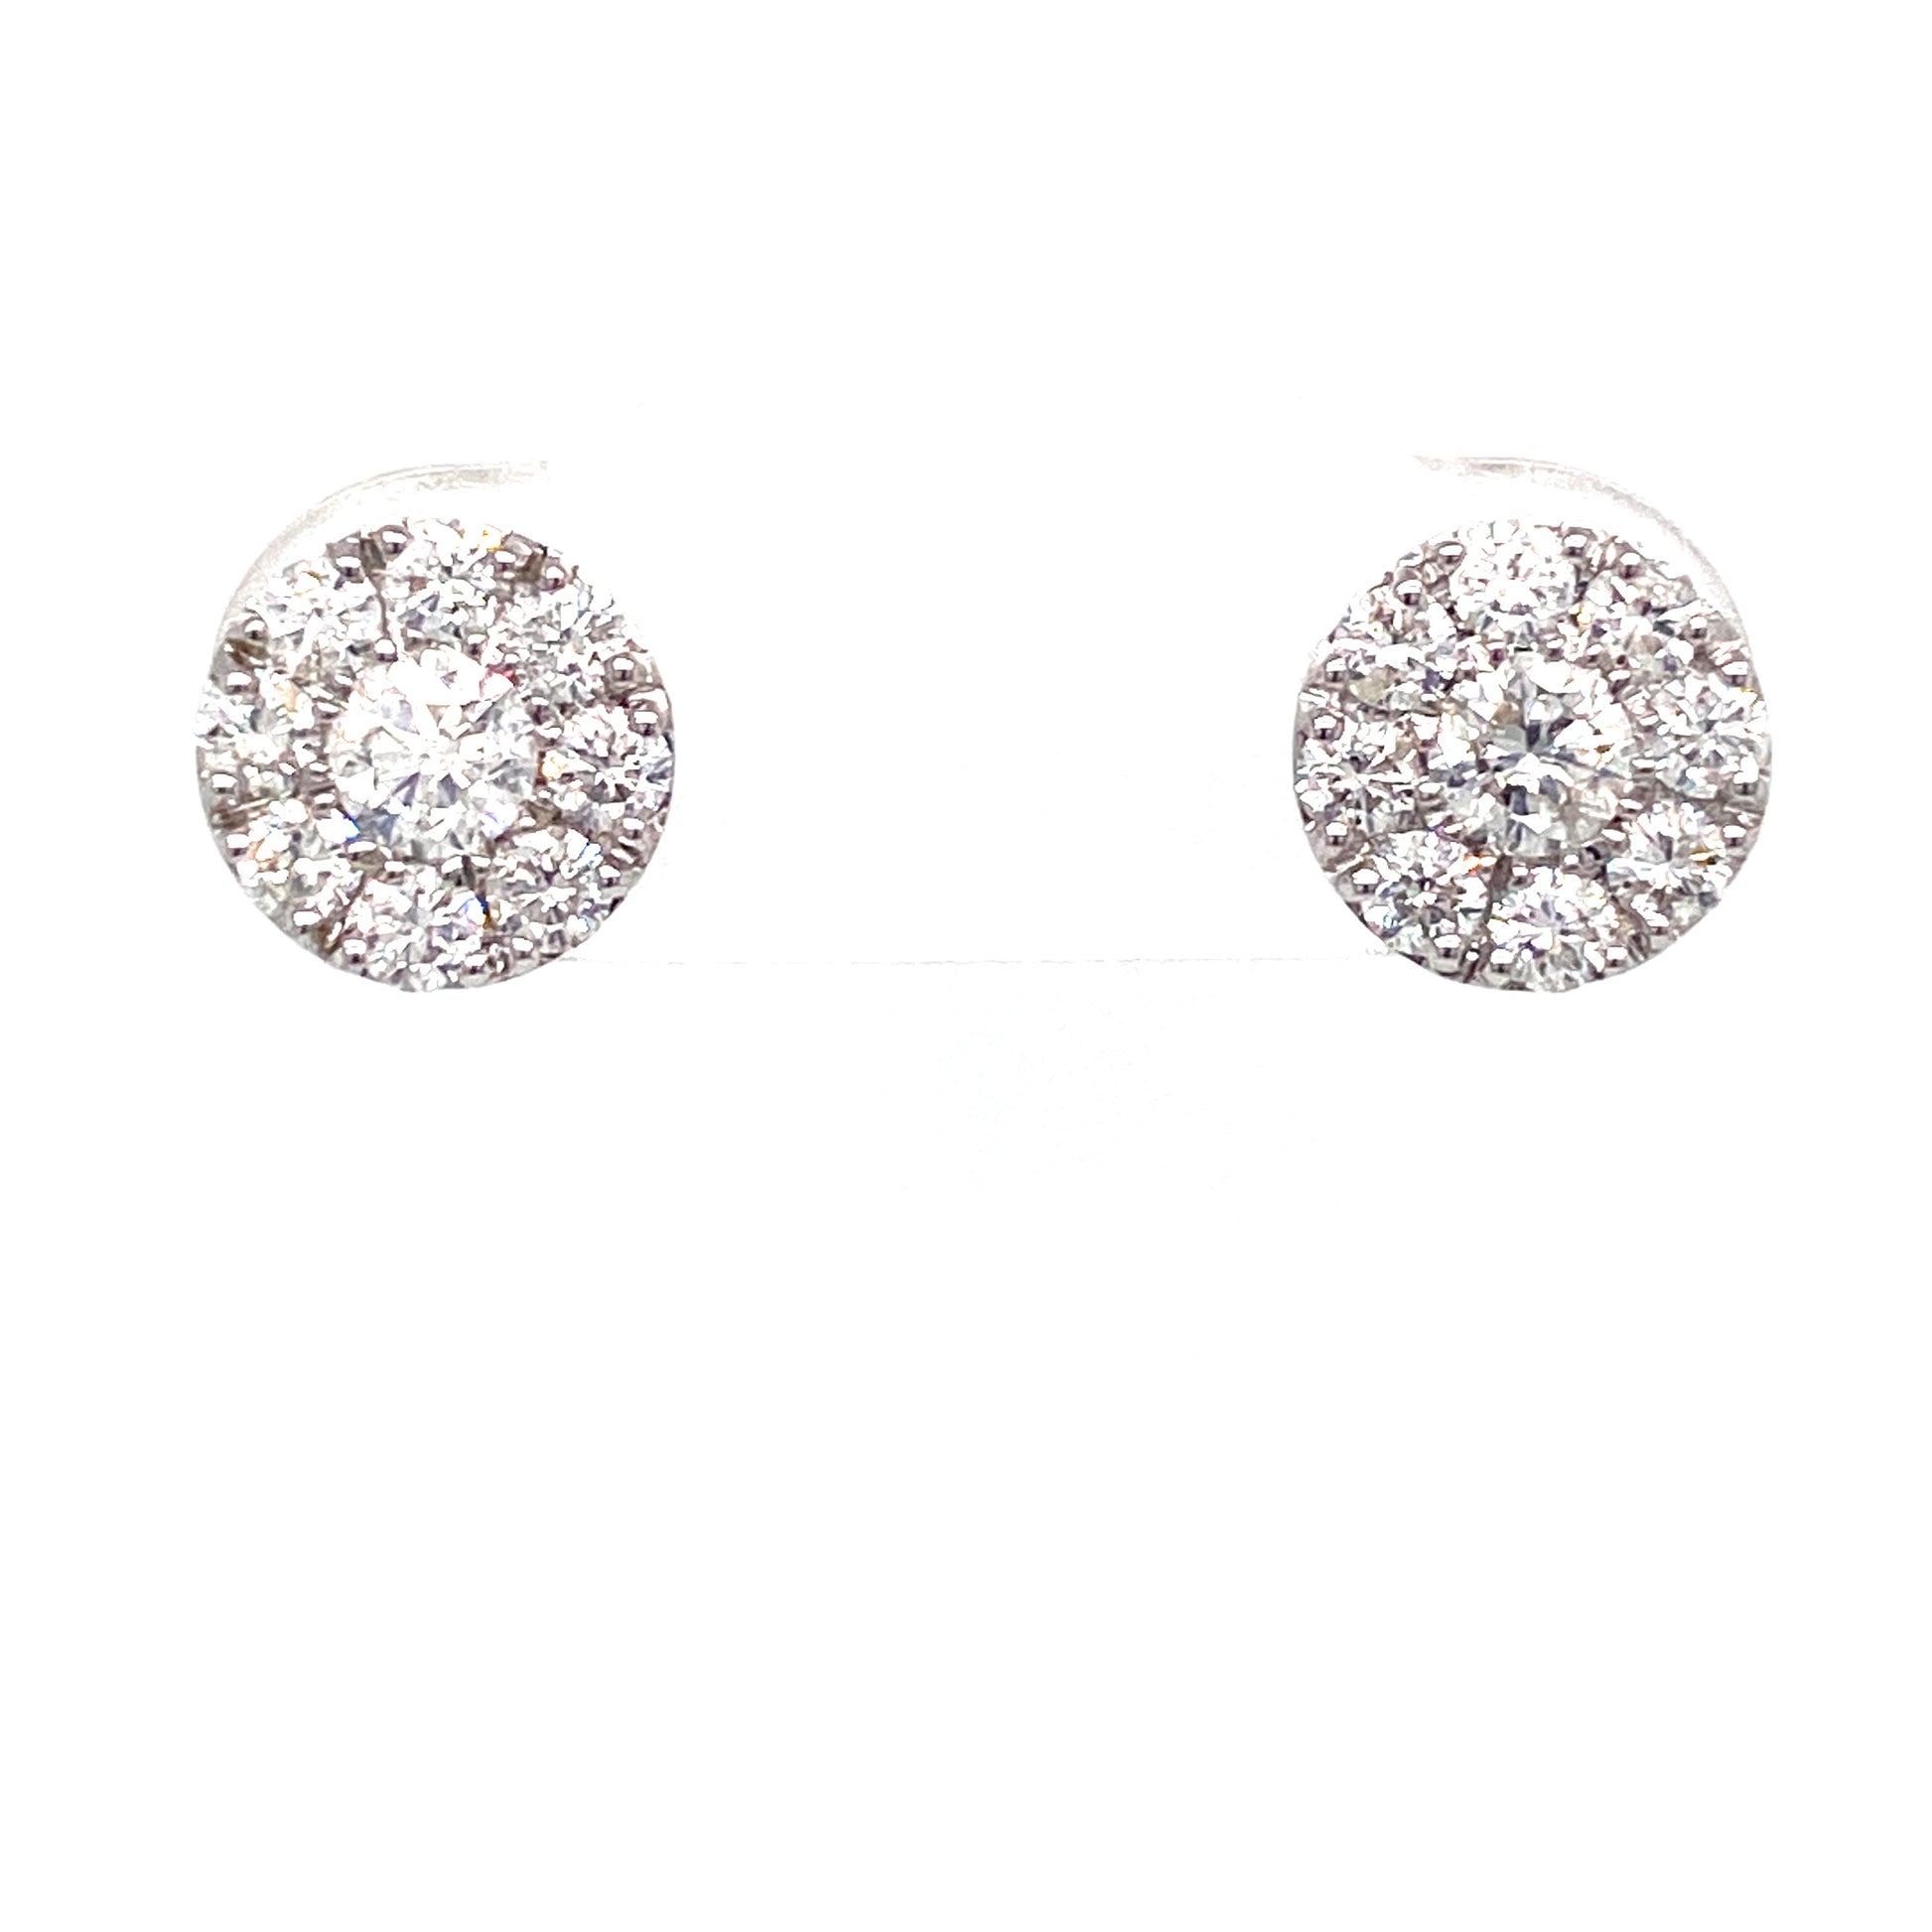 Diamond Earring - Diamond Earrings